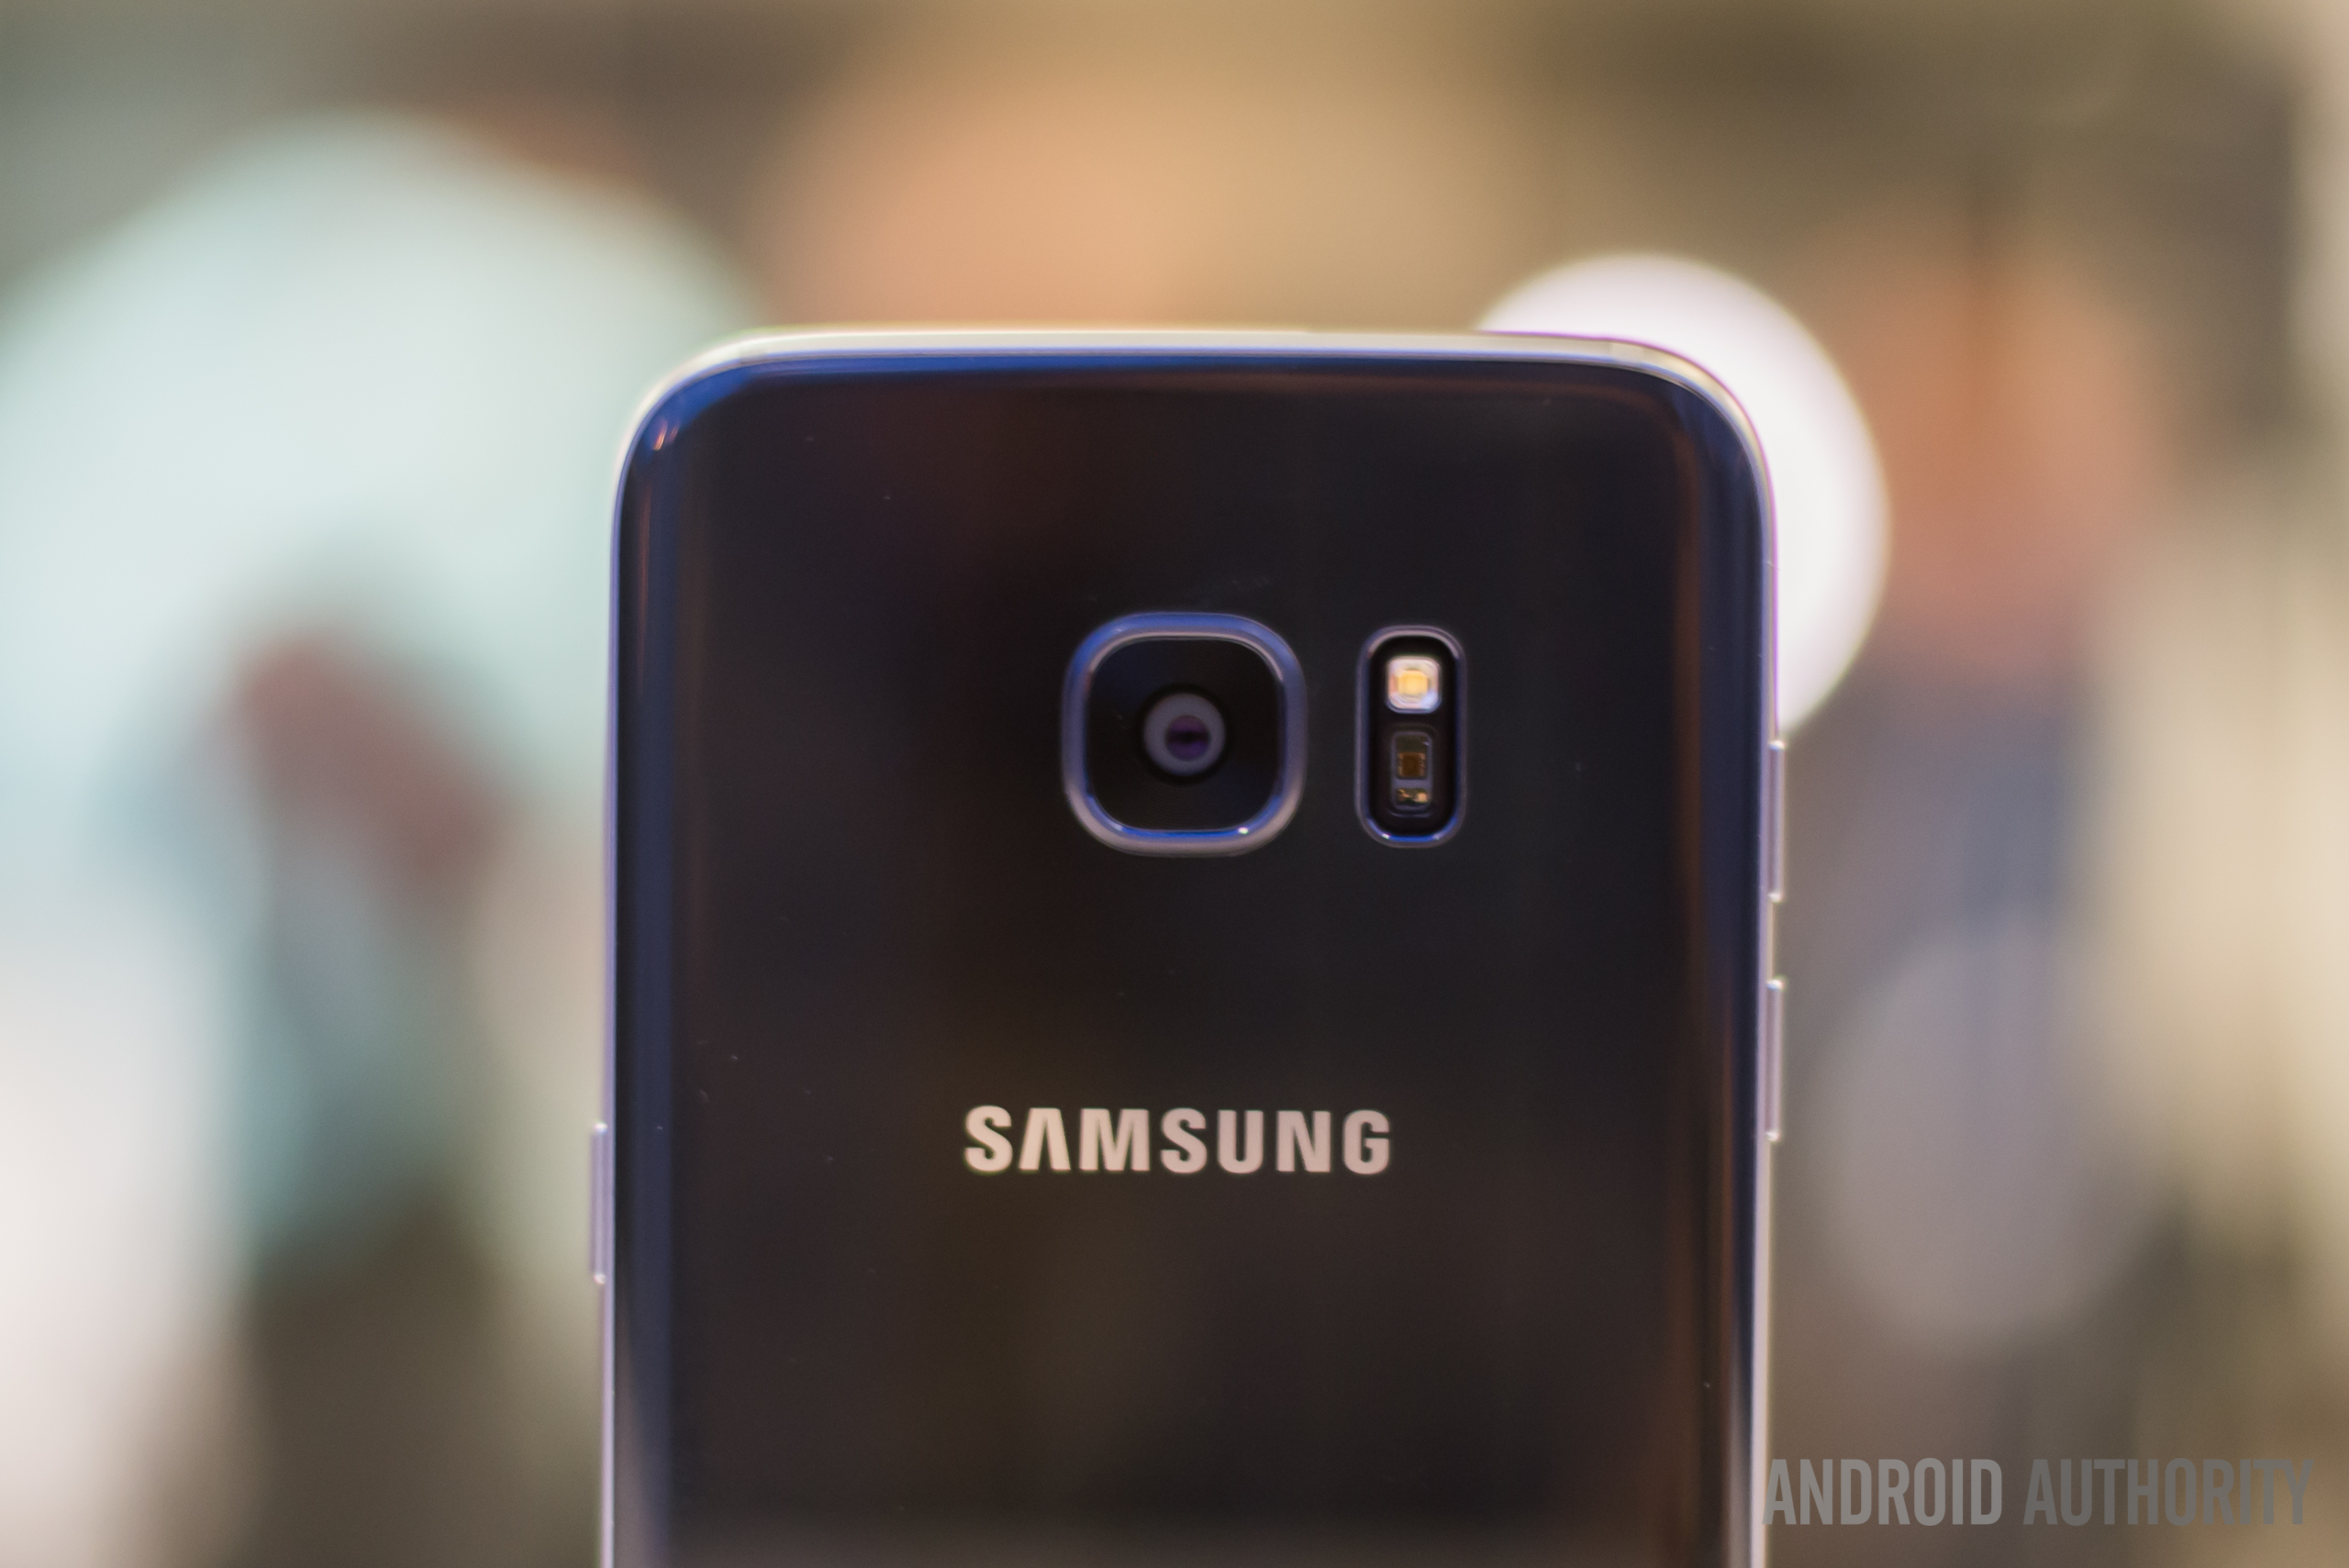 Zelden Sleutel vertalen New Samsung Galaxy S7 image sensor explained